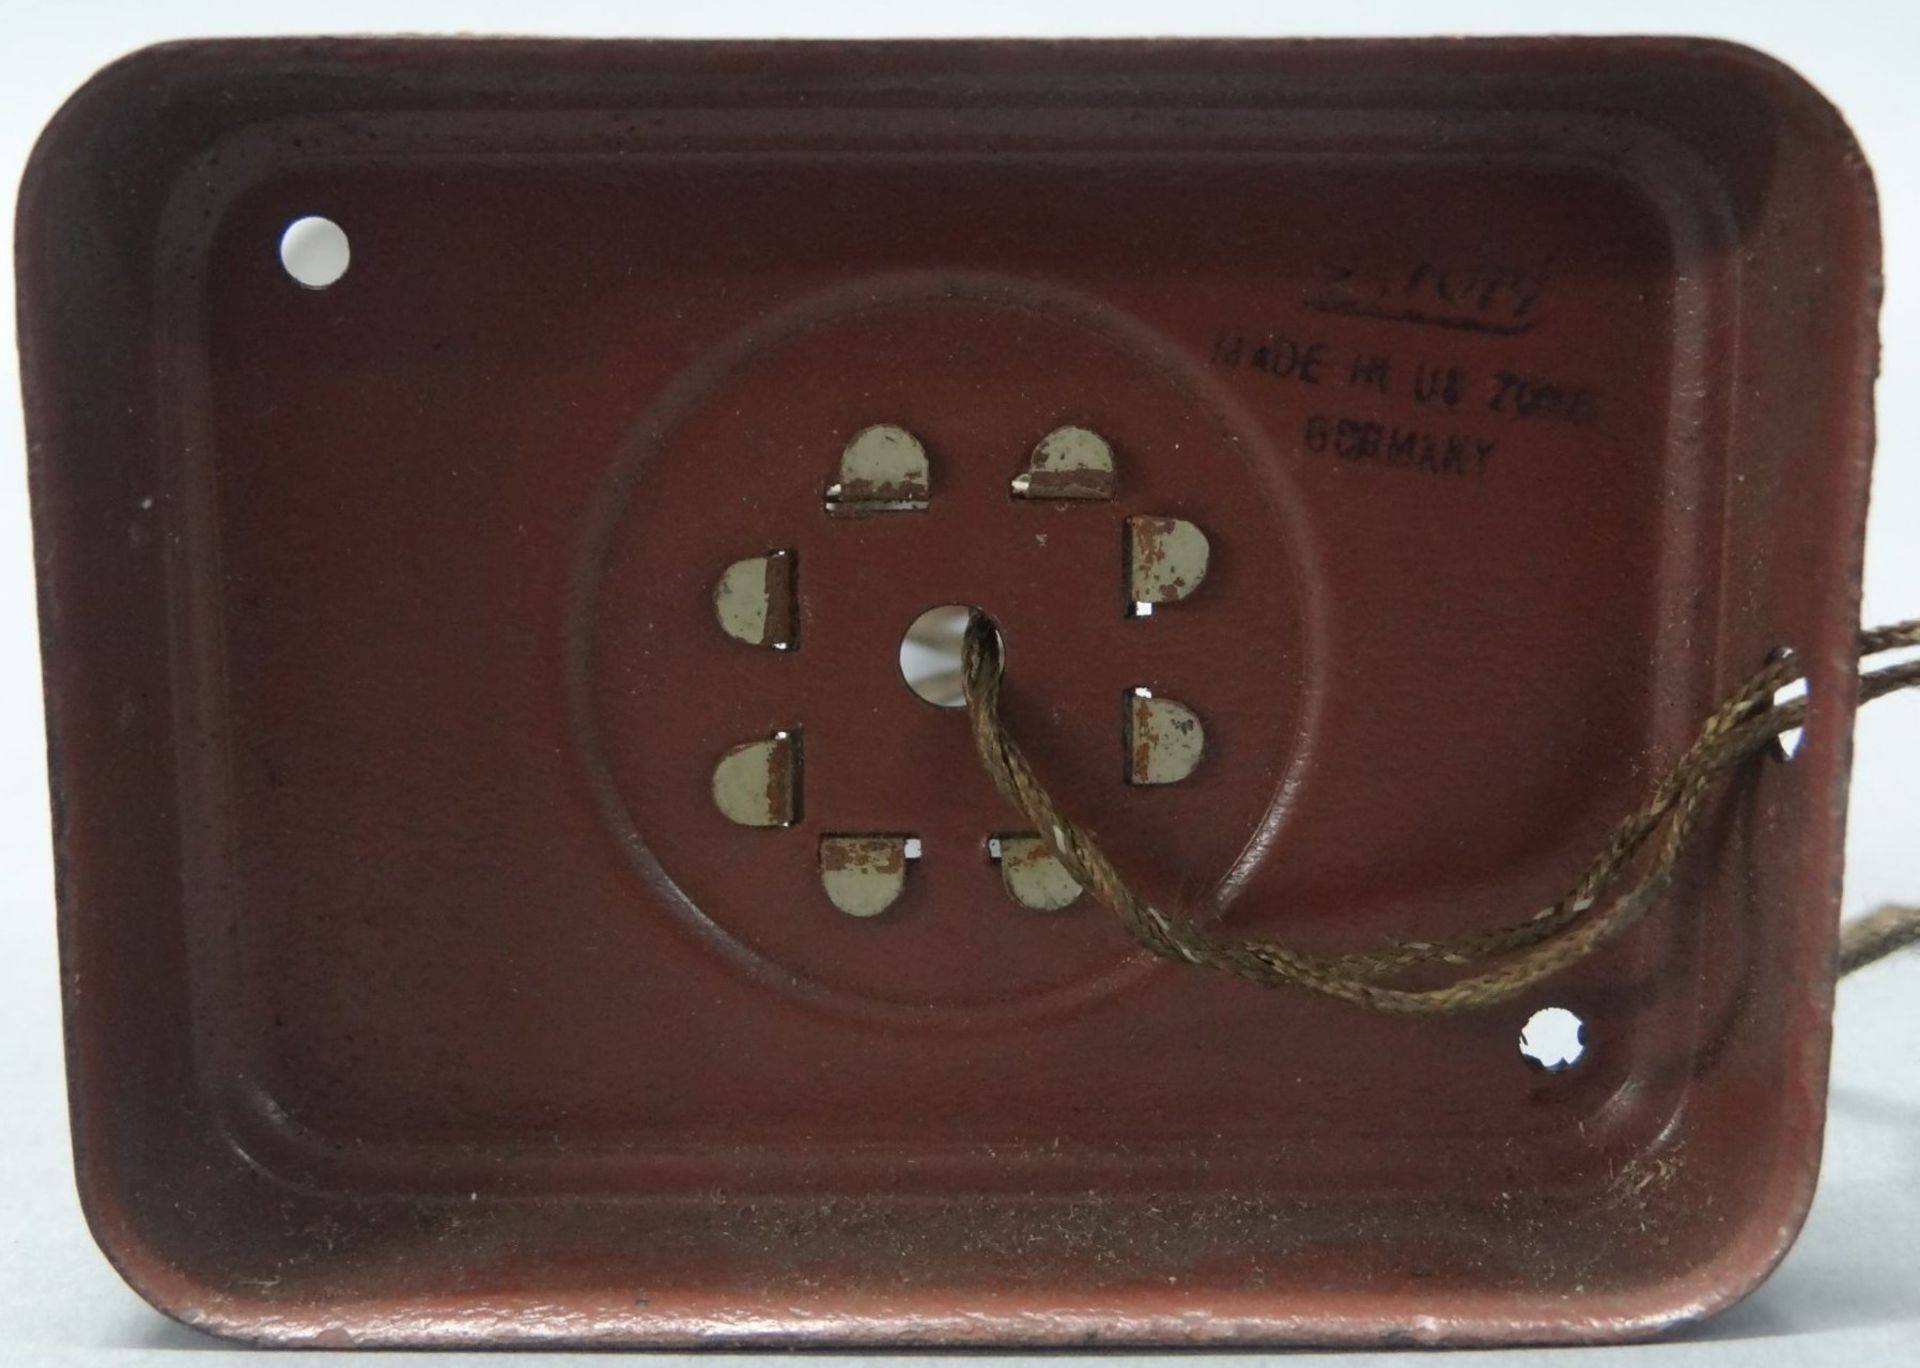 Bahnlampe "Kibri" U.S. Zone, Metall, bespielt, H-26 cm - Bild 3 aus 3